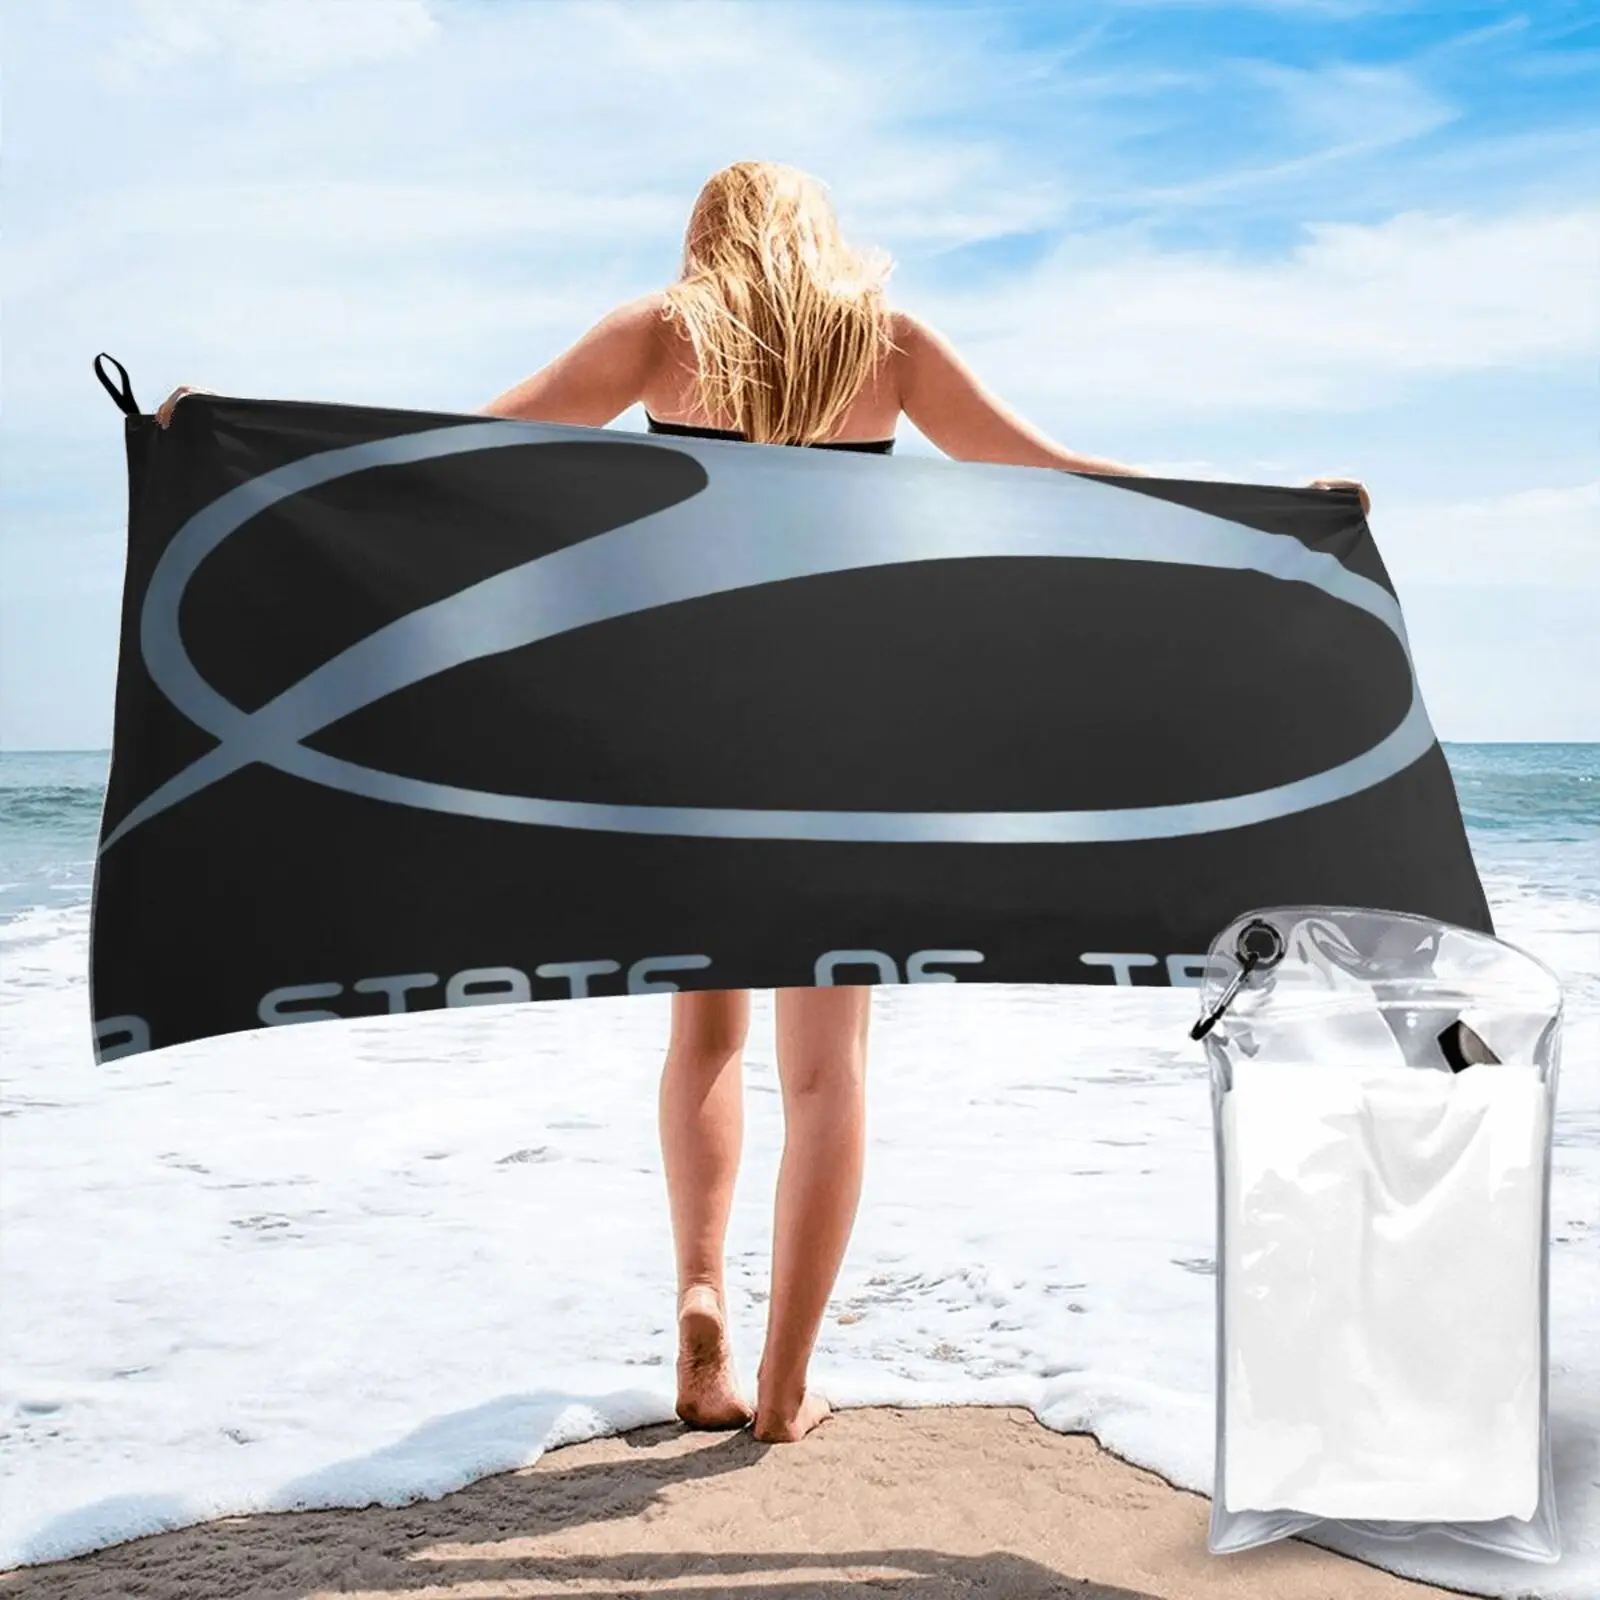 

Пляжное полотенце Armin Van Buuren, состояние транса, 3227, пляжное полотенце, морское пляжное полотенце Xxl, пляжное полотенце, детское полотенце, пля...